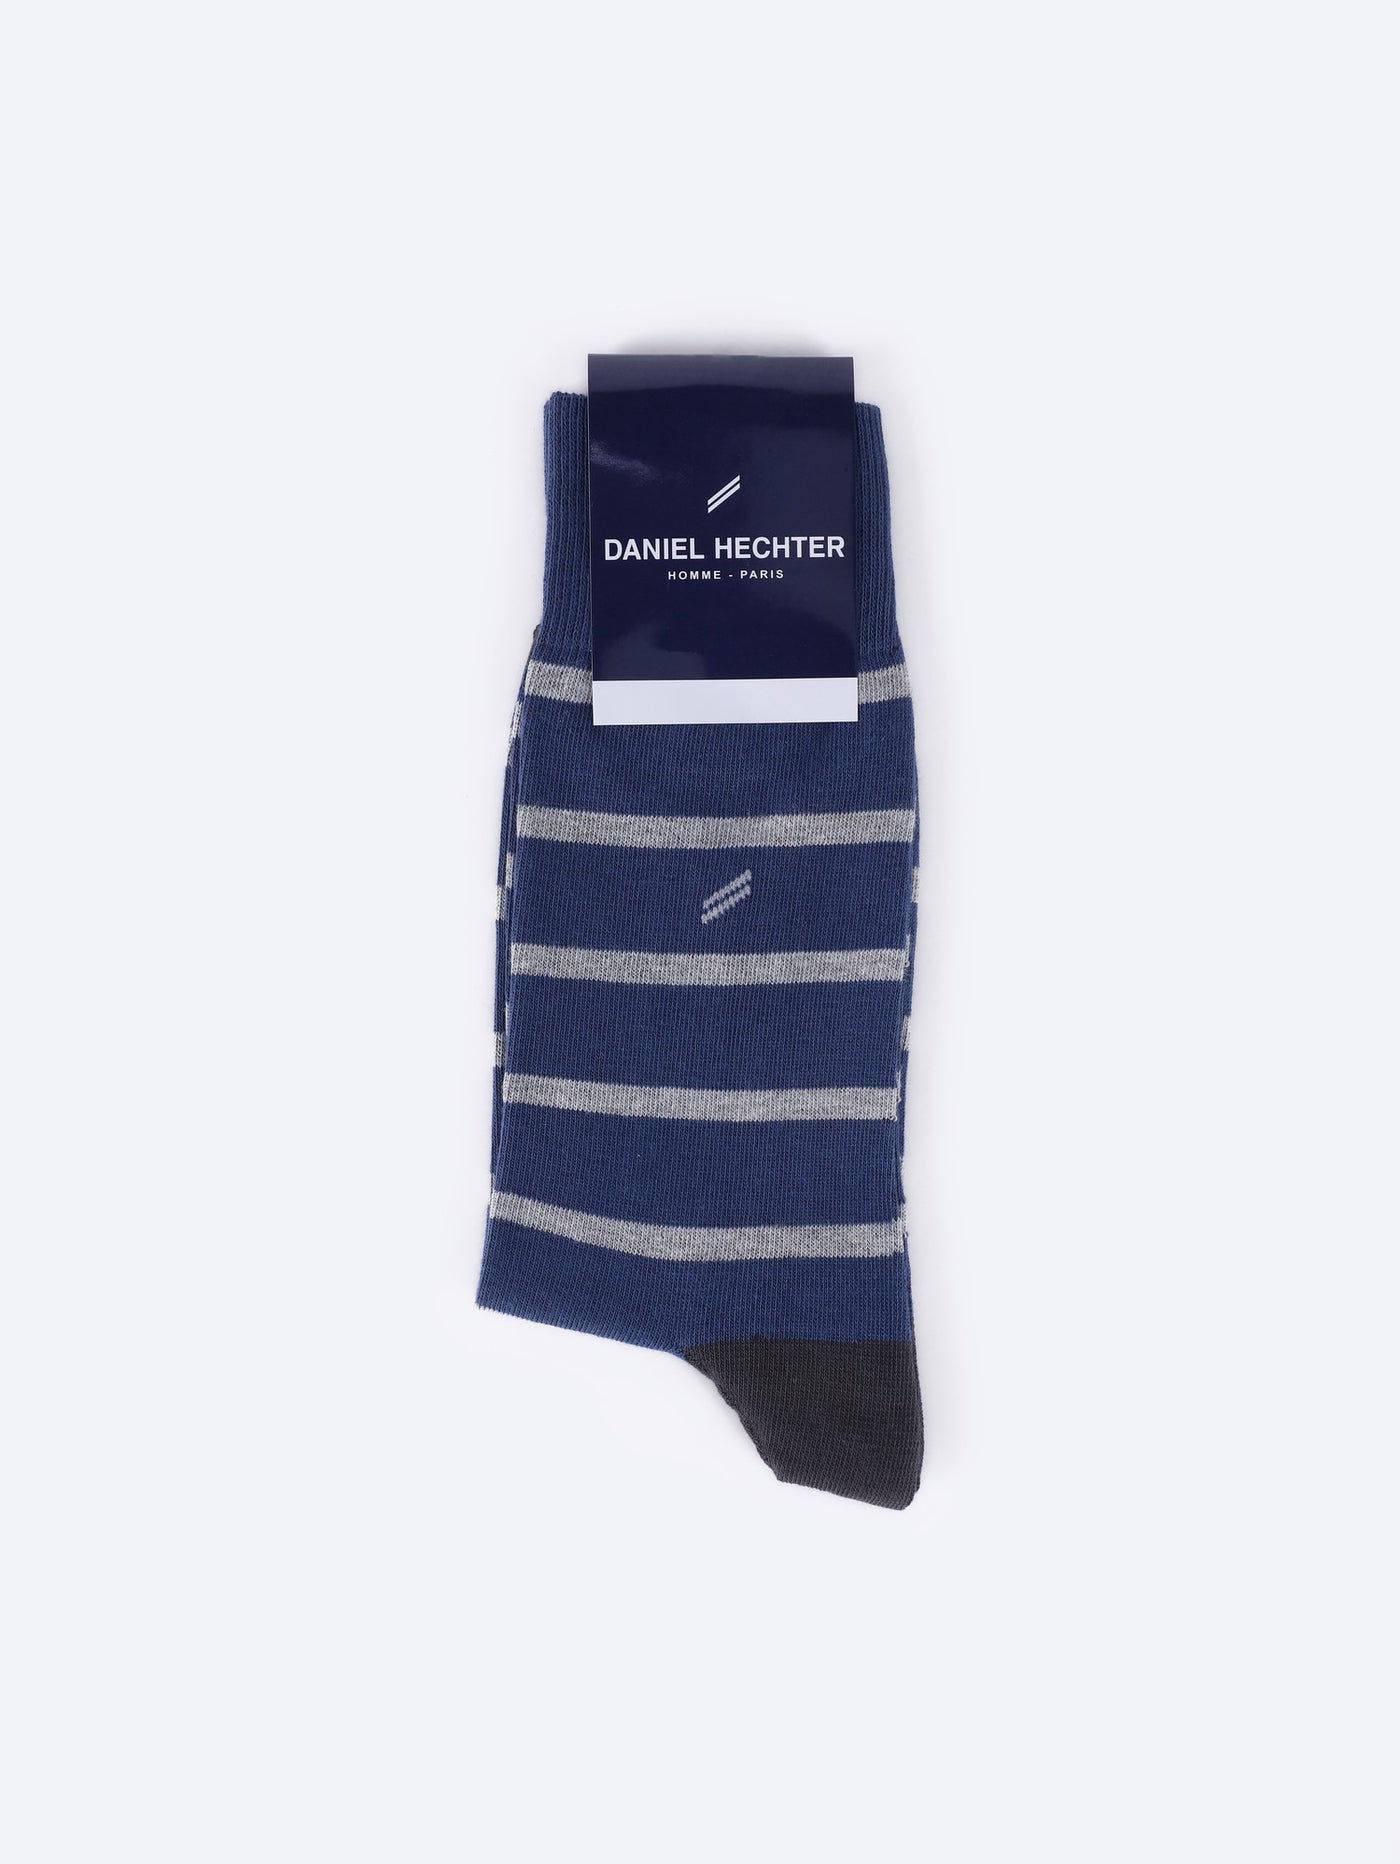 Daniel Hechter Men's Long Striped Socks